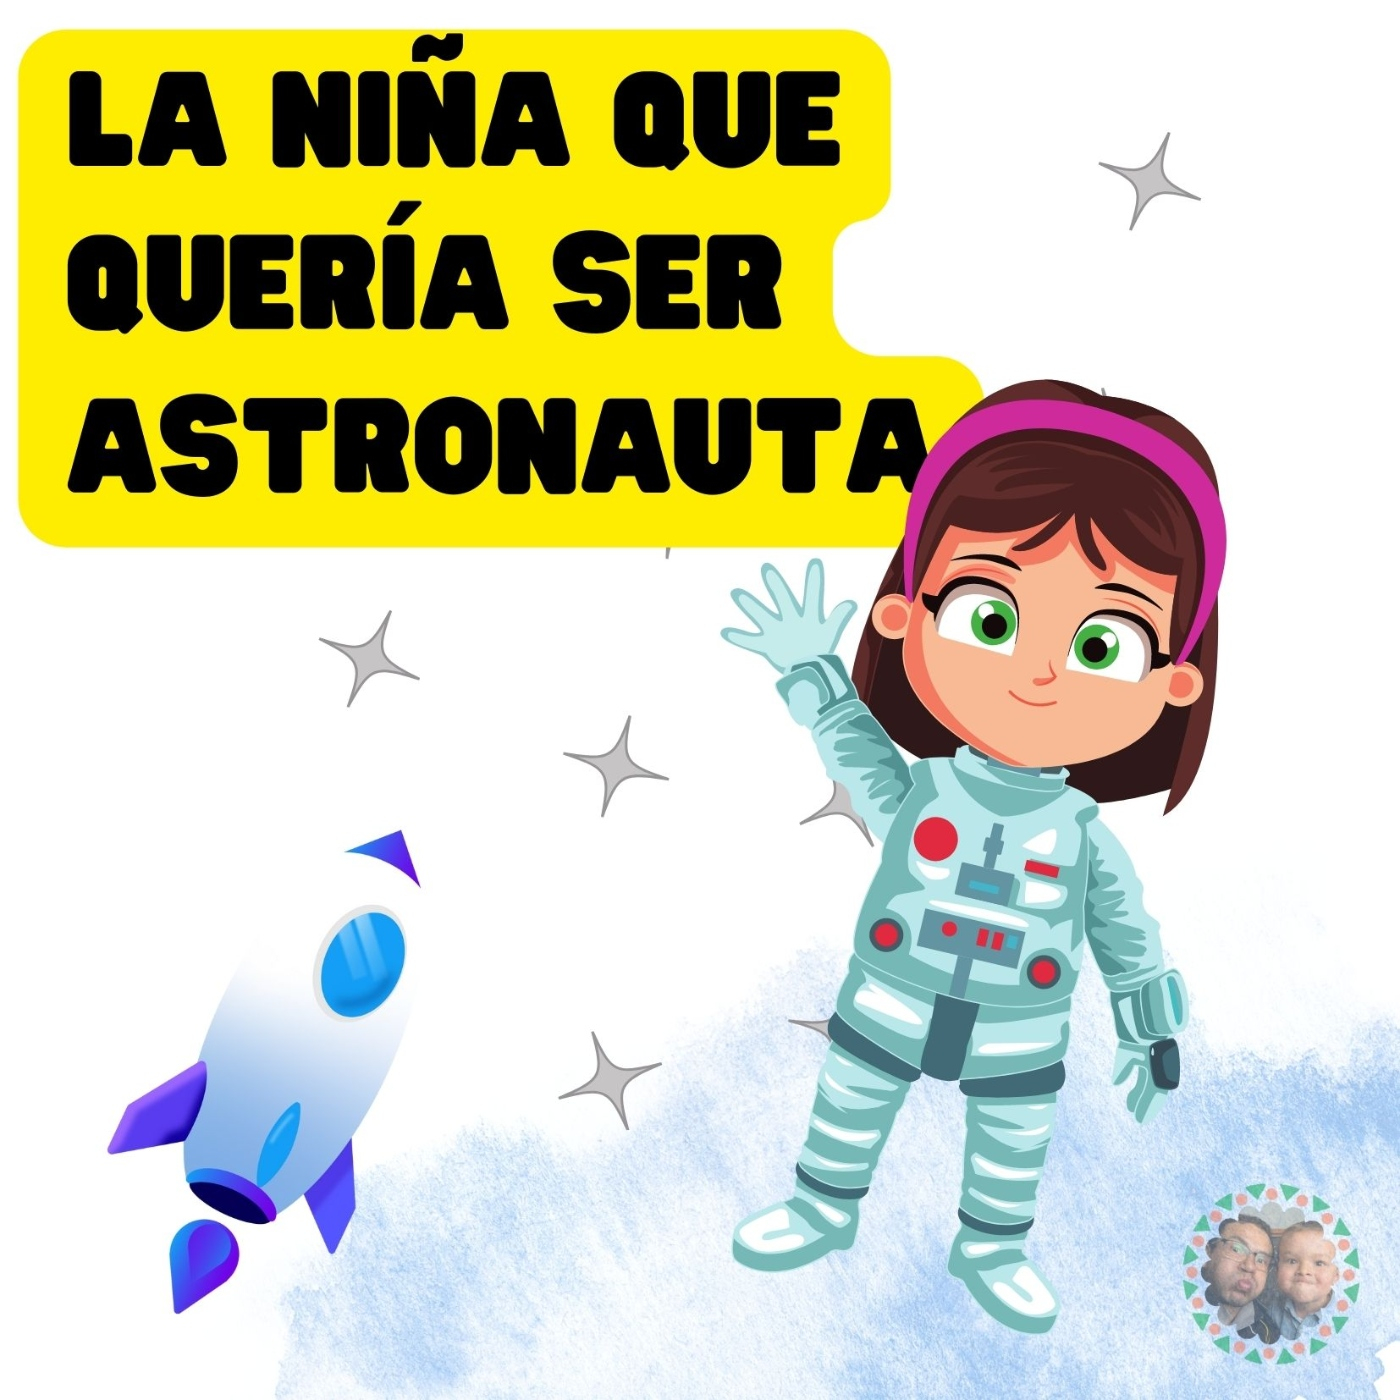 La niña que quería ser astronauta